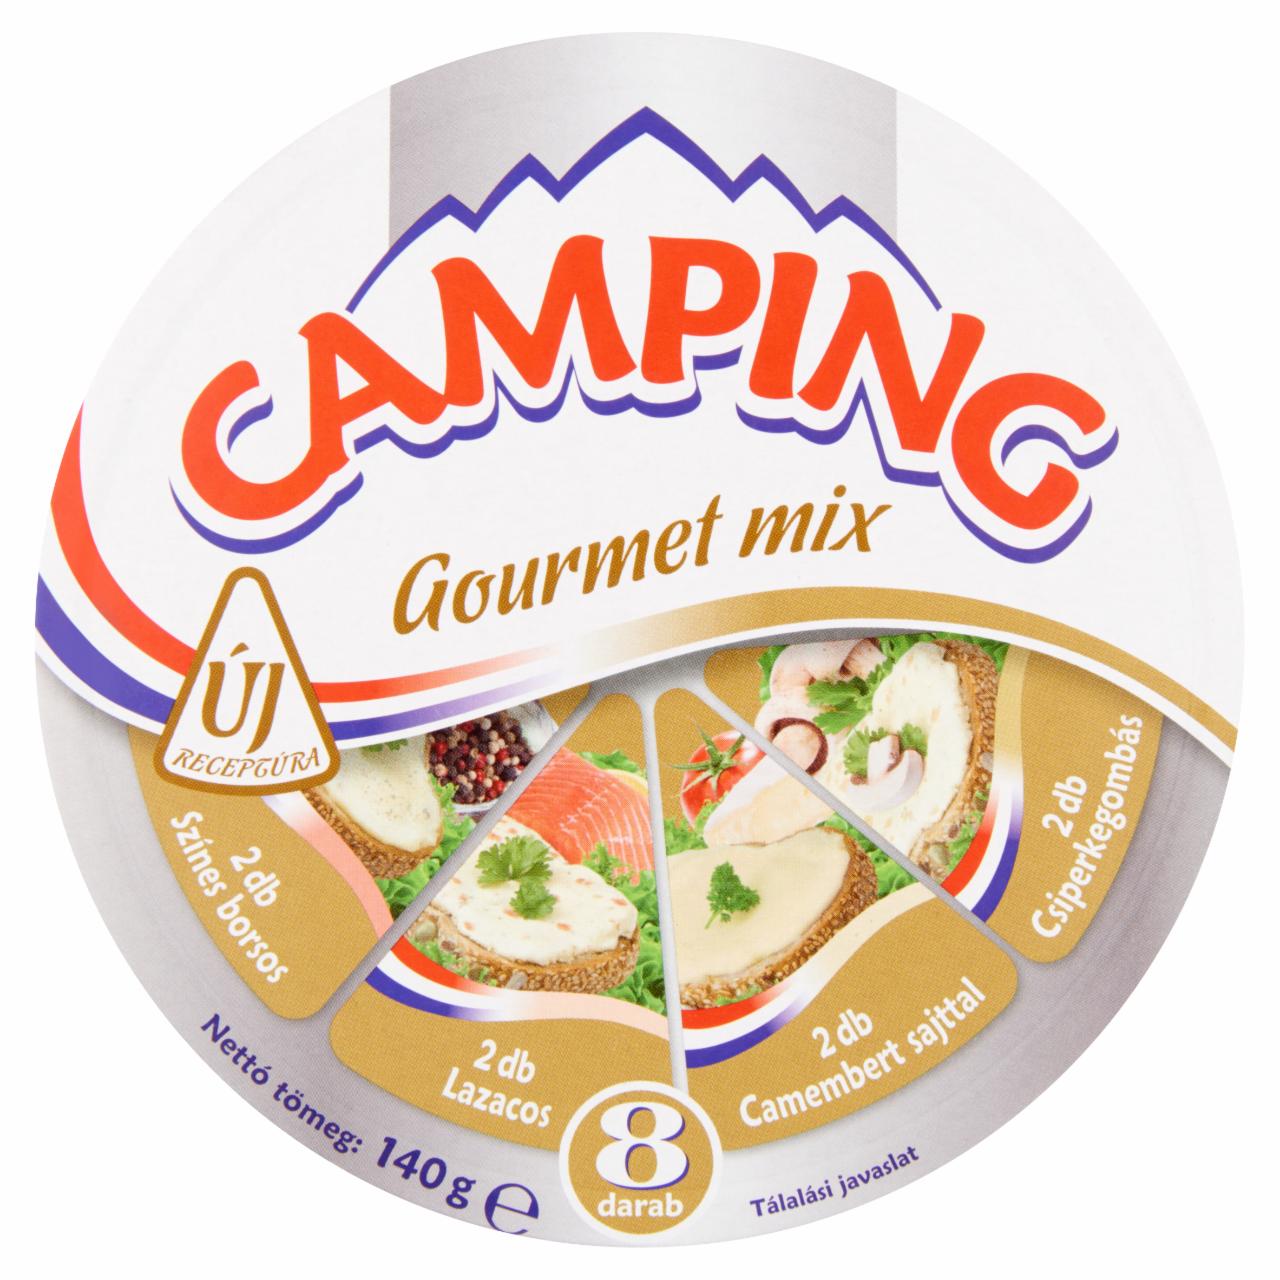 Képek - Camping Gourmet Mix kenhető, zsírdús, ömlesztett sajt 140 g